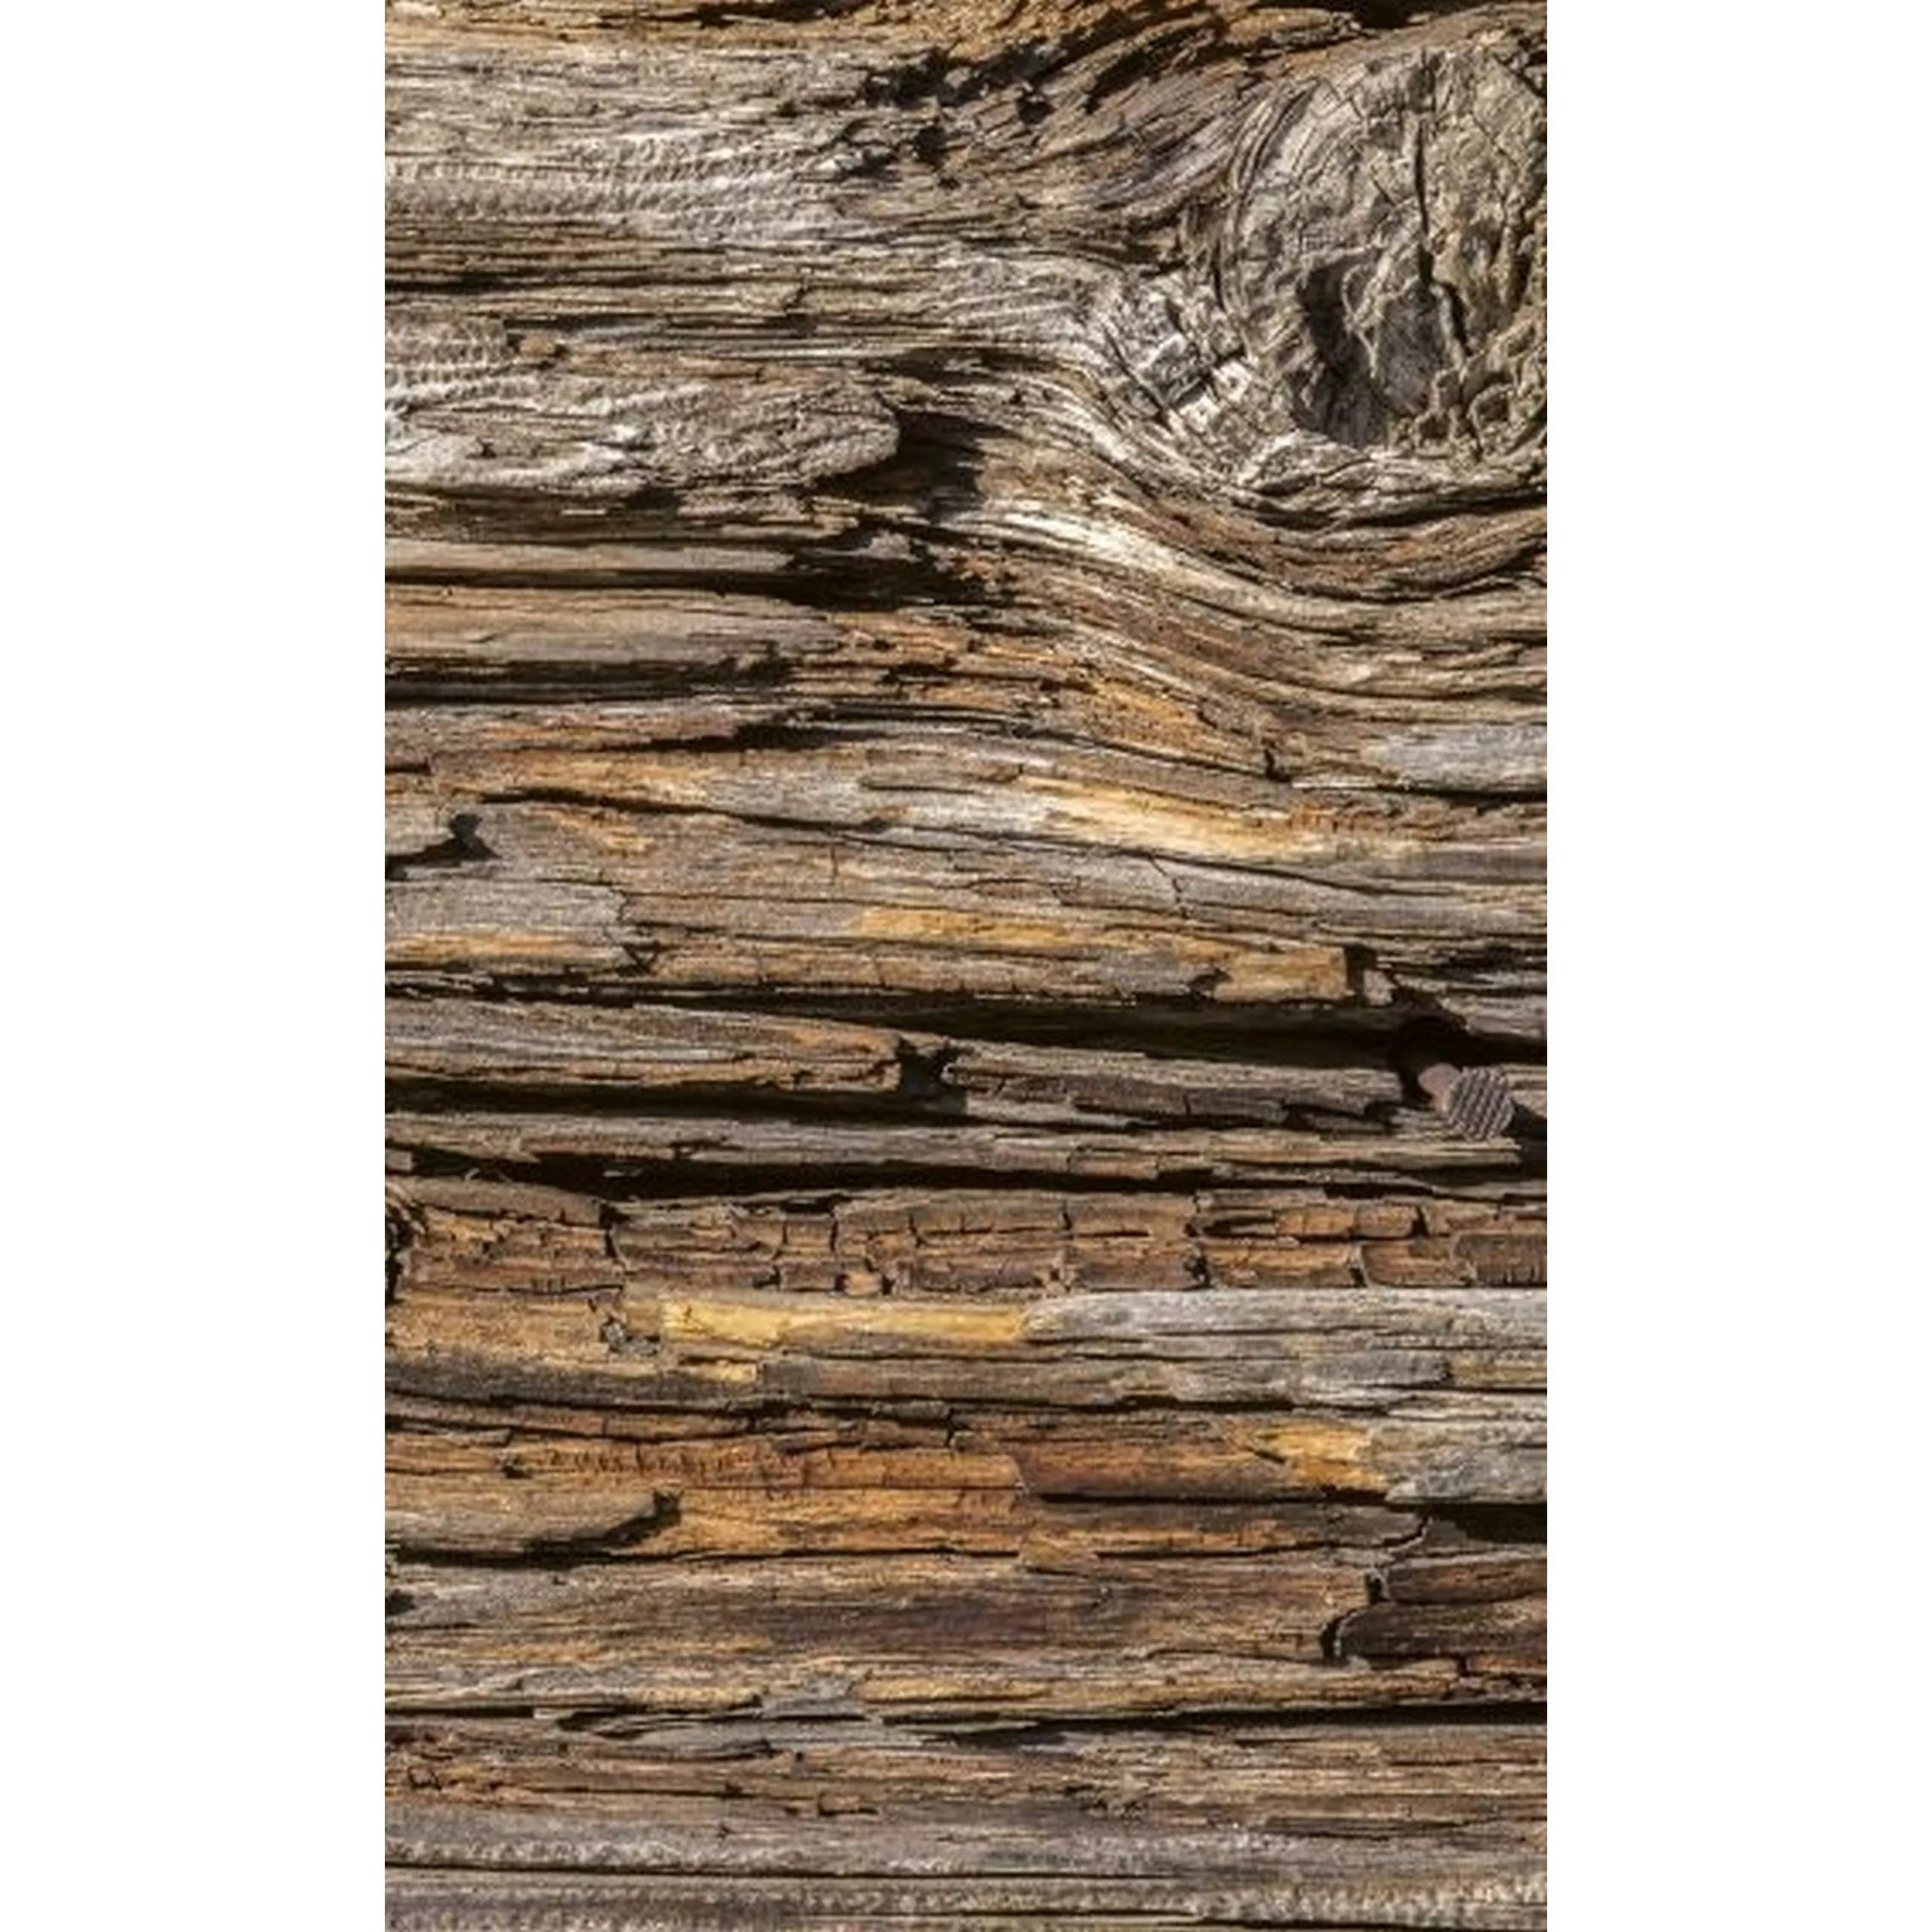 Fototapete TREE BARK | MS-2-0159 | Braun | Digitaldruck auf Vliesträger günstig online kaufen